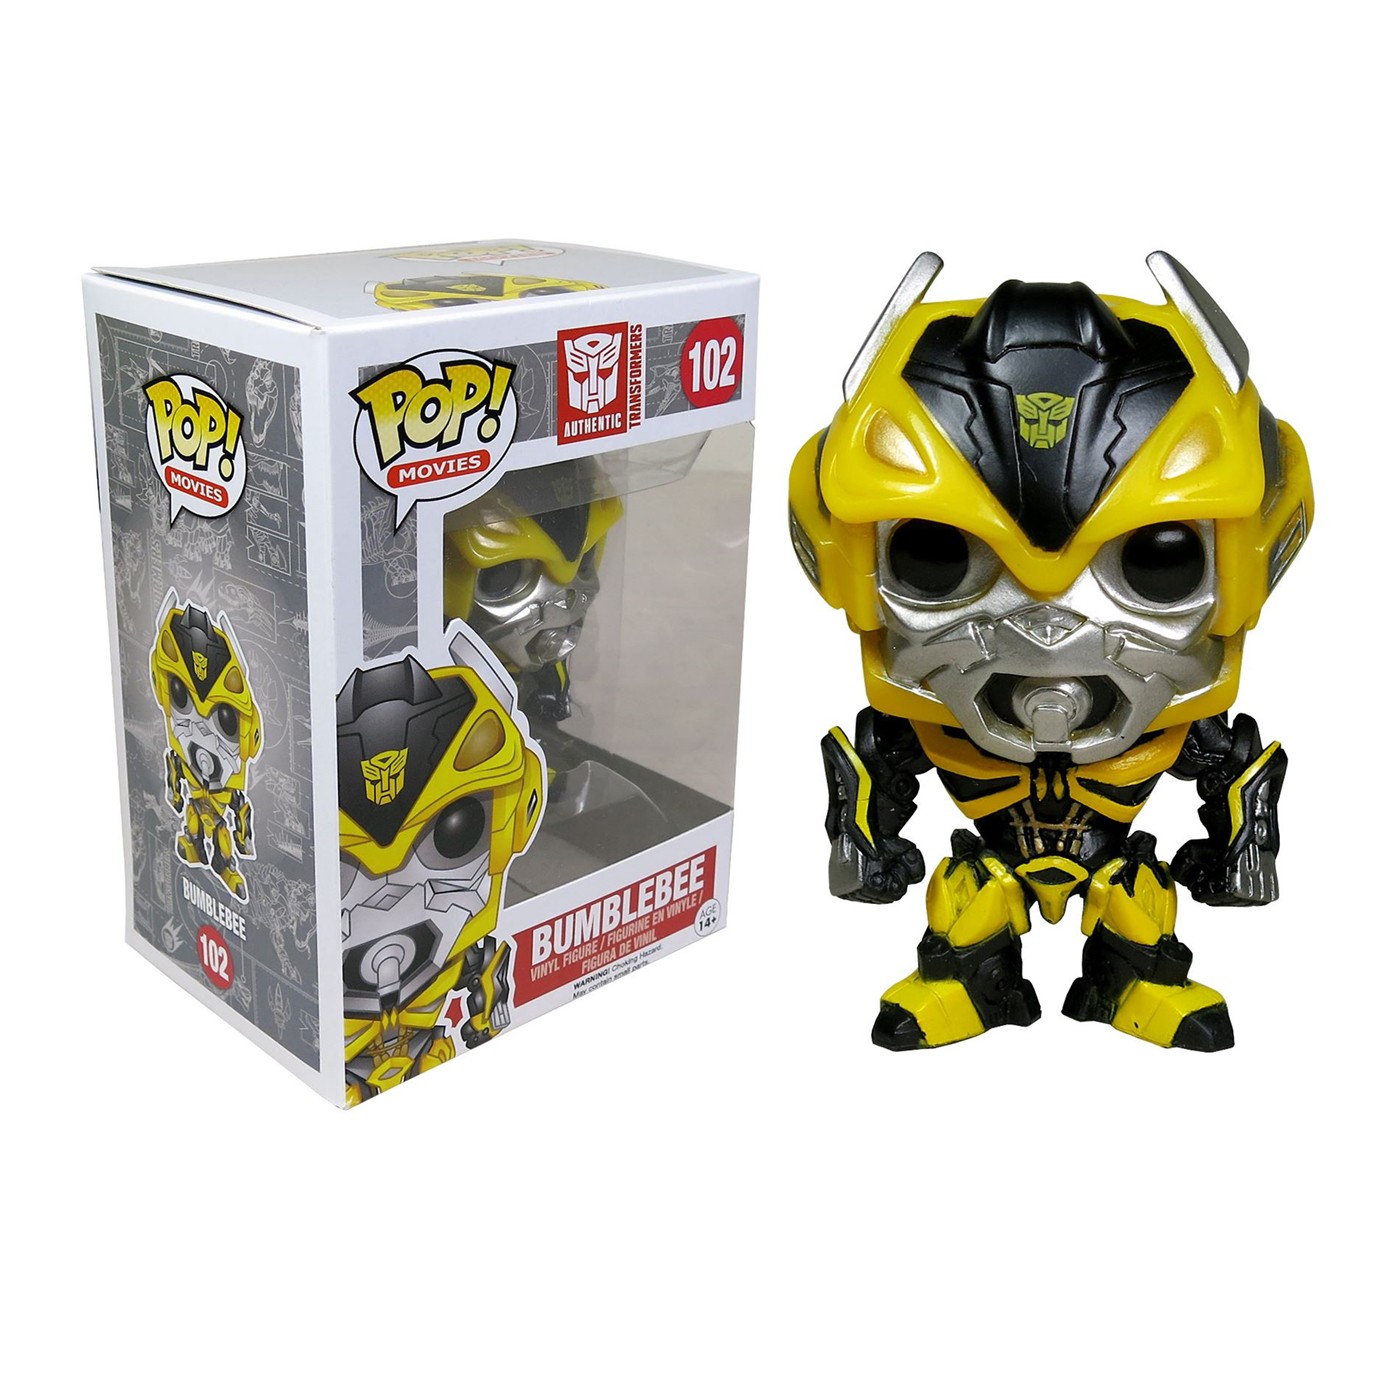 Transformers 4 Bumblebee Pop Vinyl Figure